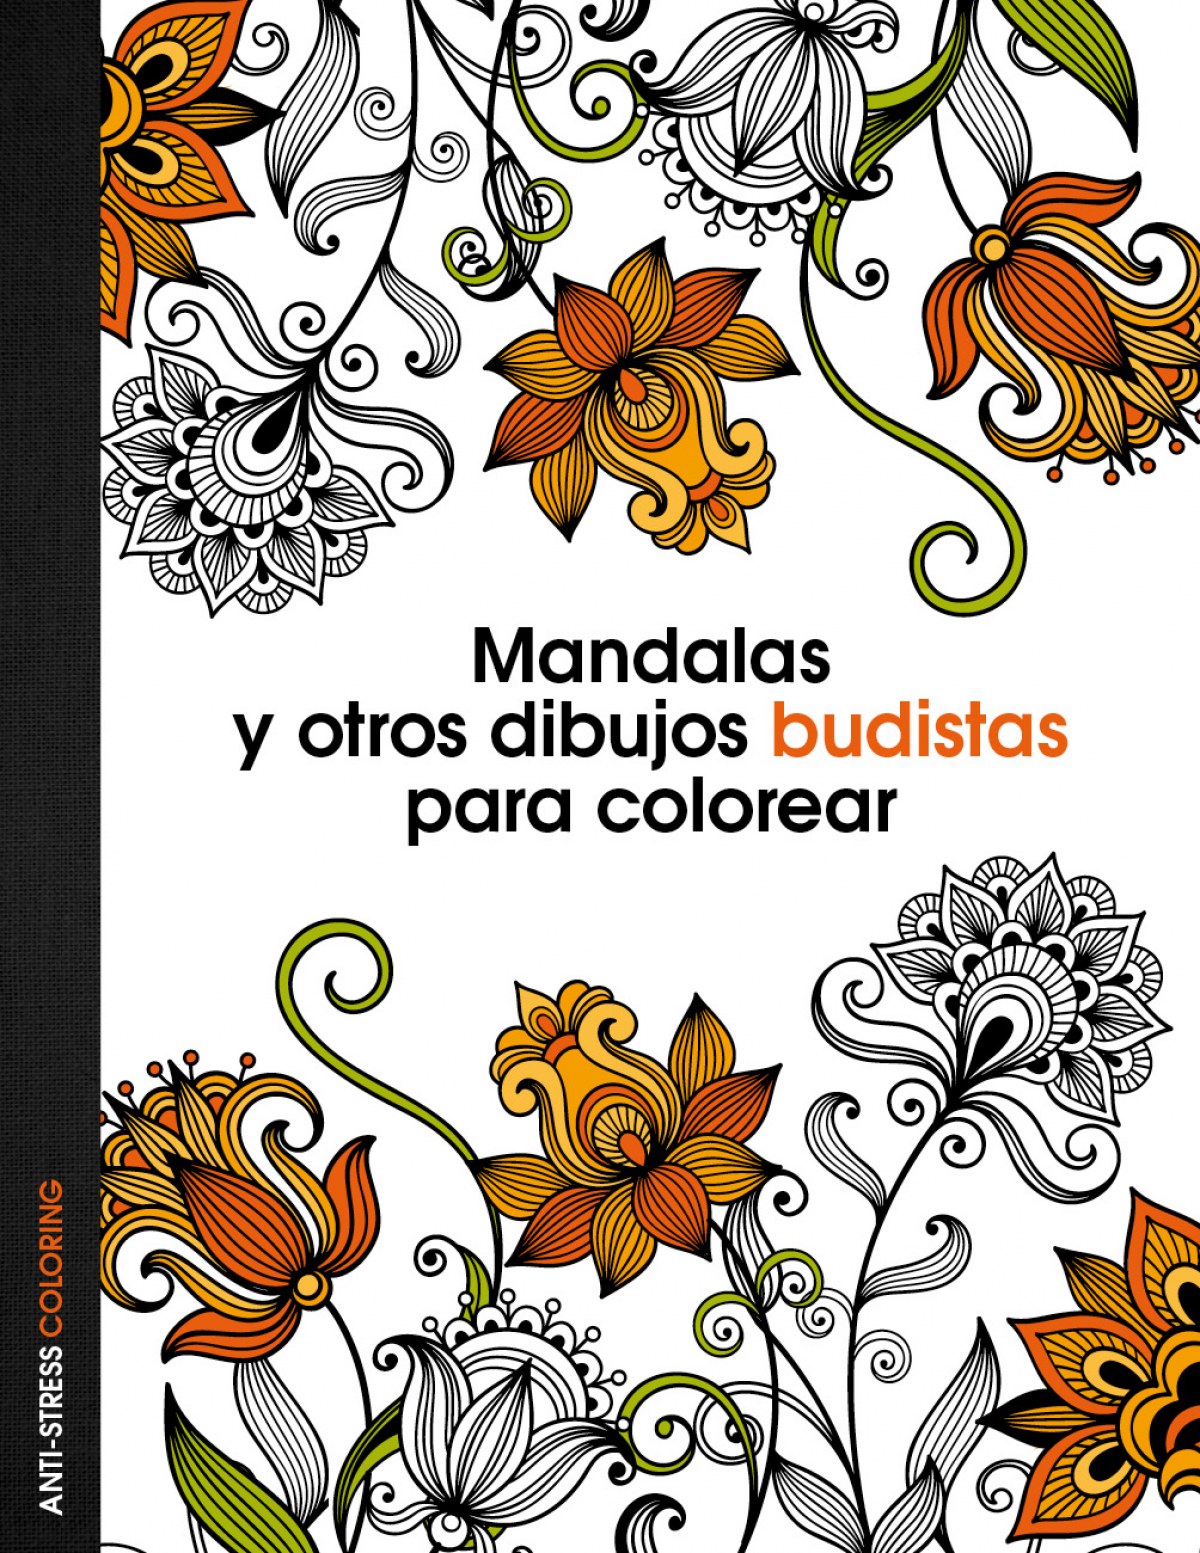 Libro de colorear para adultos : 100 mandalas para colorear - Diseños de mandala  para aliviar el estrés para la relajación de adultos - Dibujos para colorear  relajantes - Hermosas Mandalas Libro